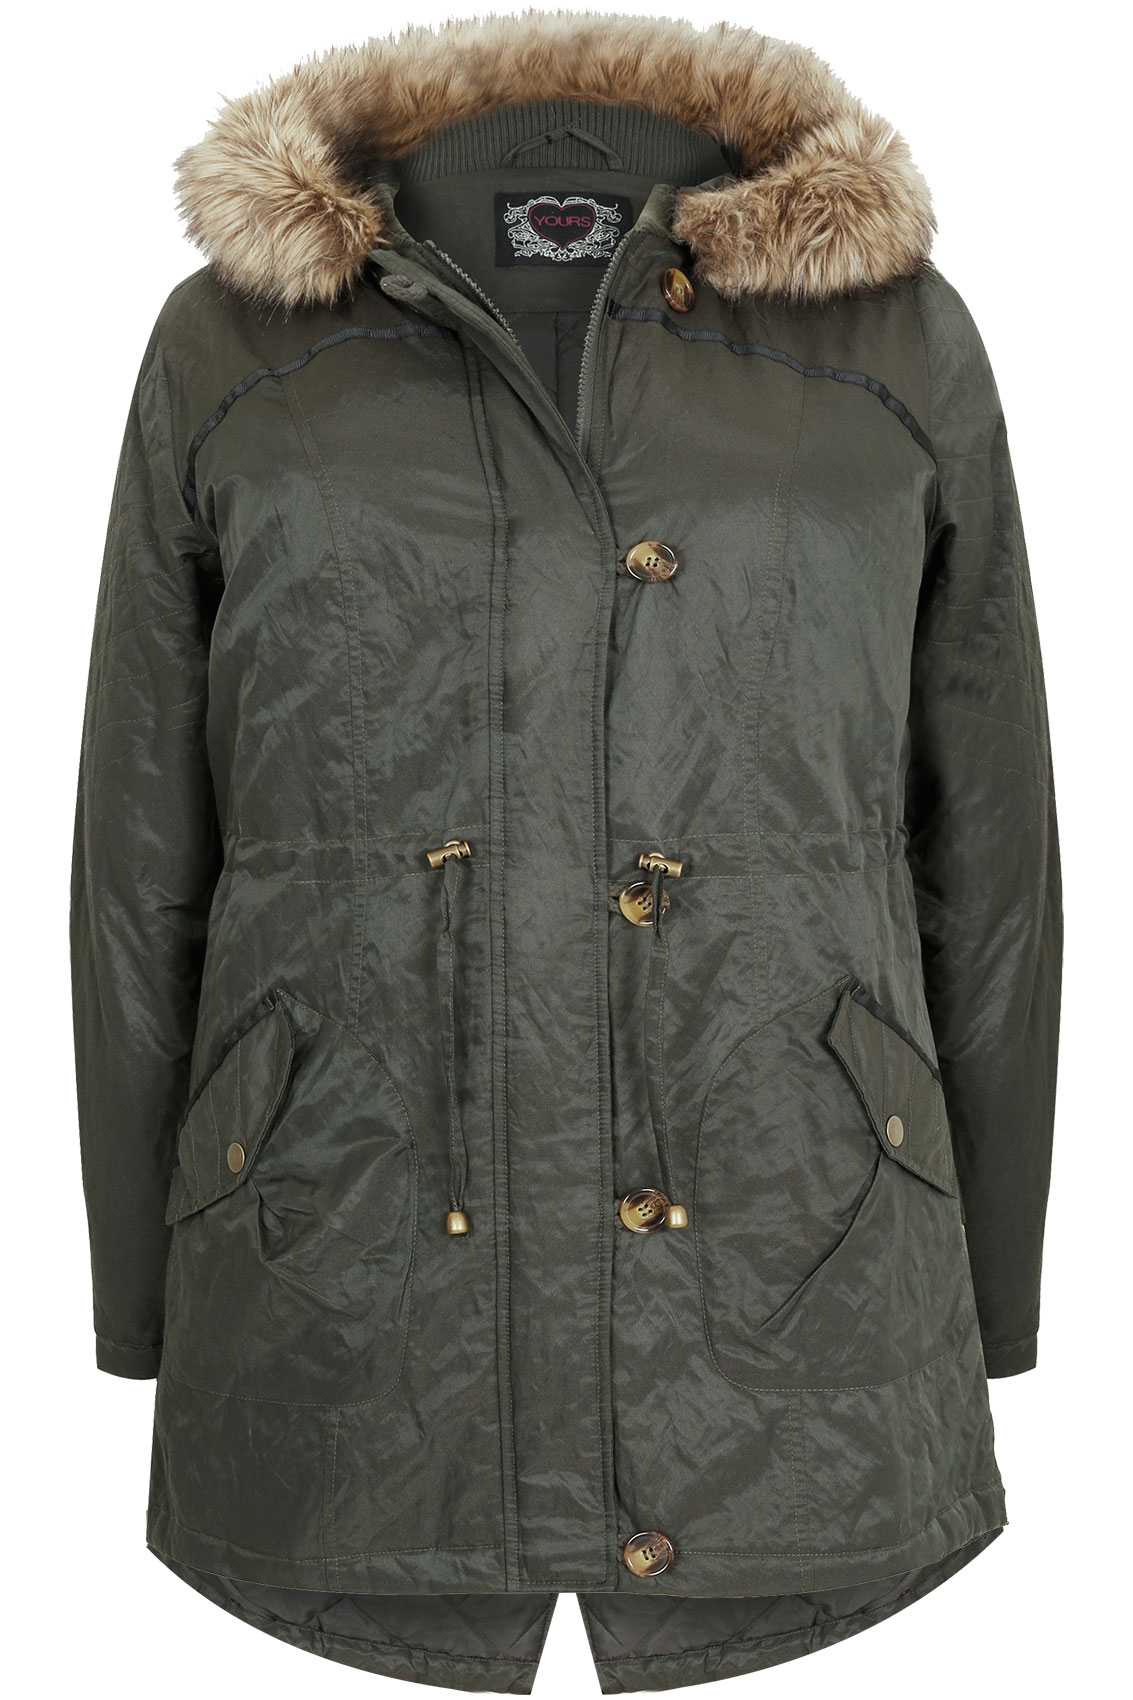 Khaki Metallic Parka Coat With Faux Fur Hood Plus Size 16 to 36